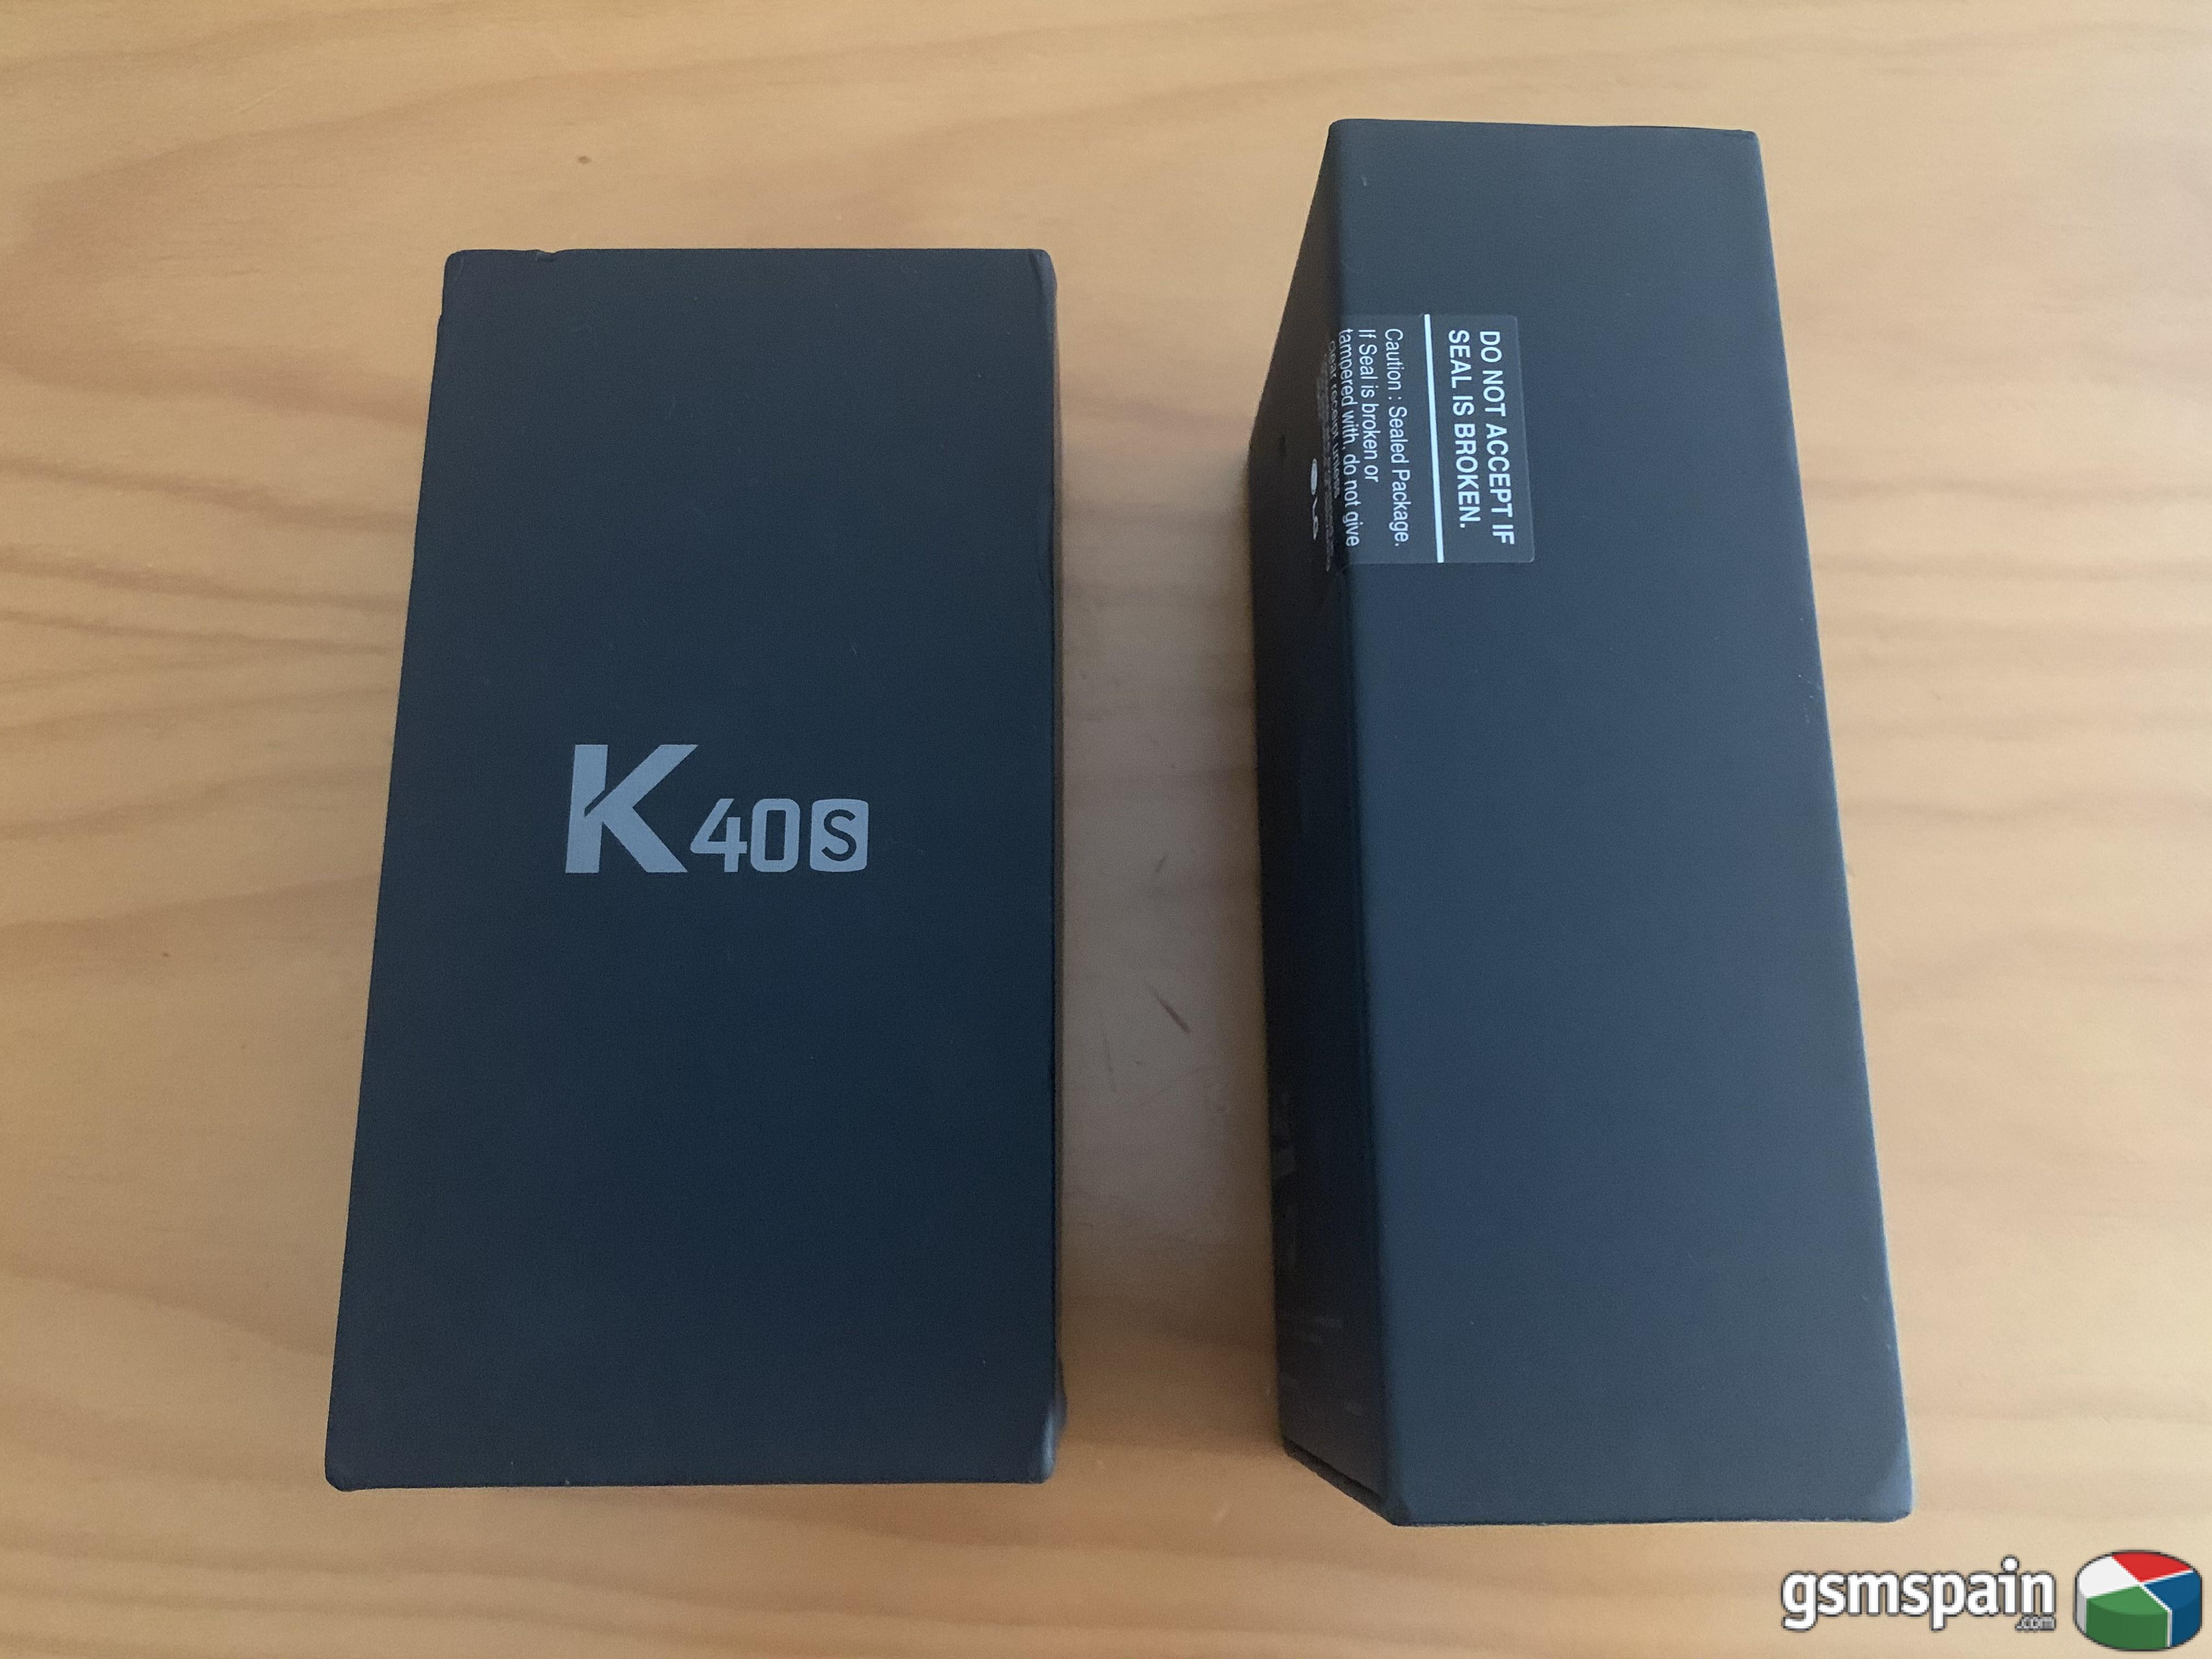 [VENDO] 2 Smartphone LG K40S. Nuevos precintados.